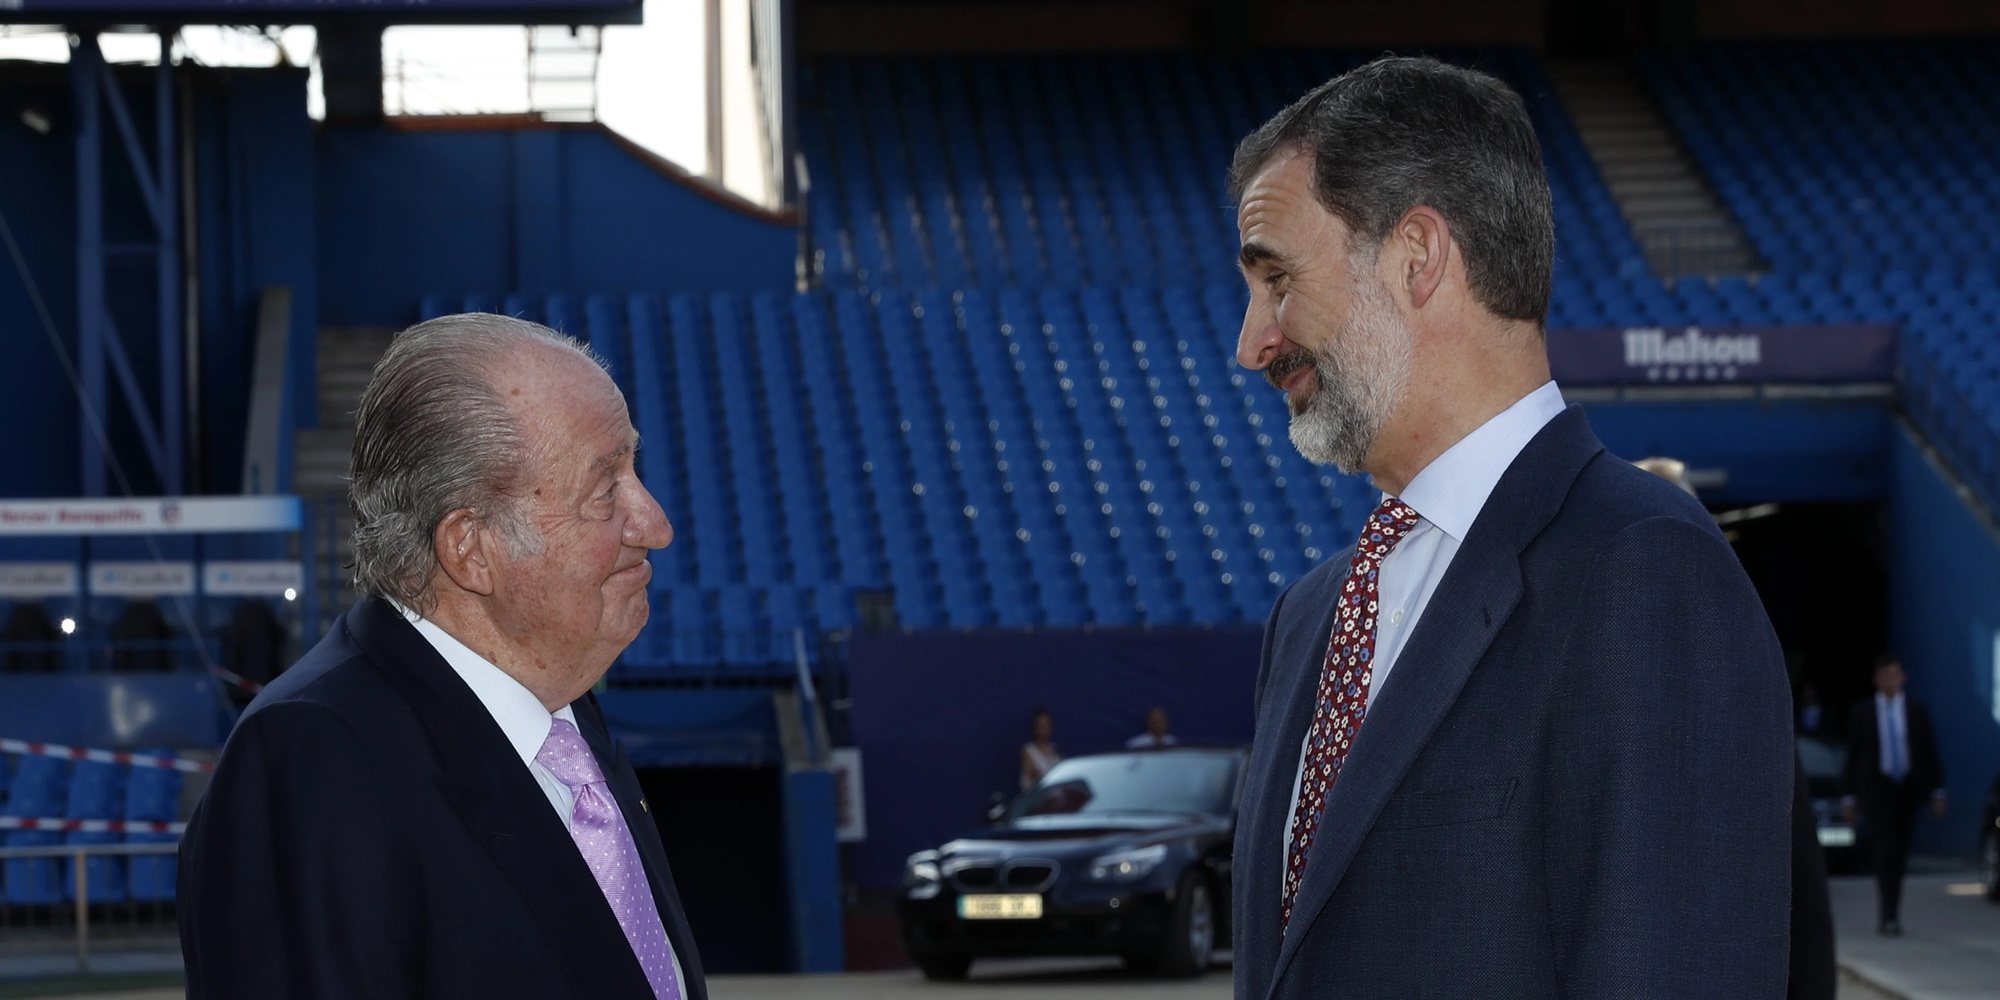 La reunión del Rey Juan Carlos con el Rey Felipe antes de su marcha de España: "Para que estés tranquilo, me voy"